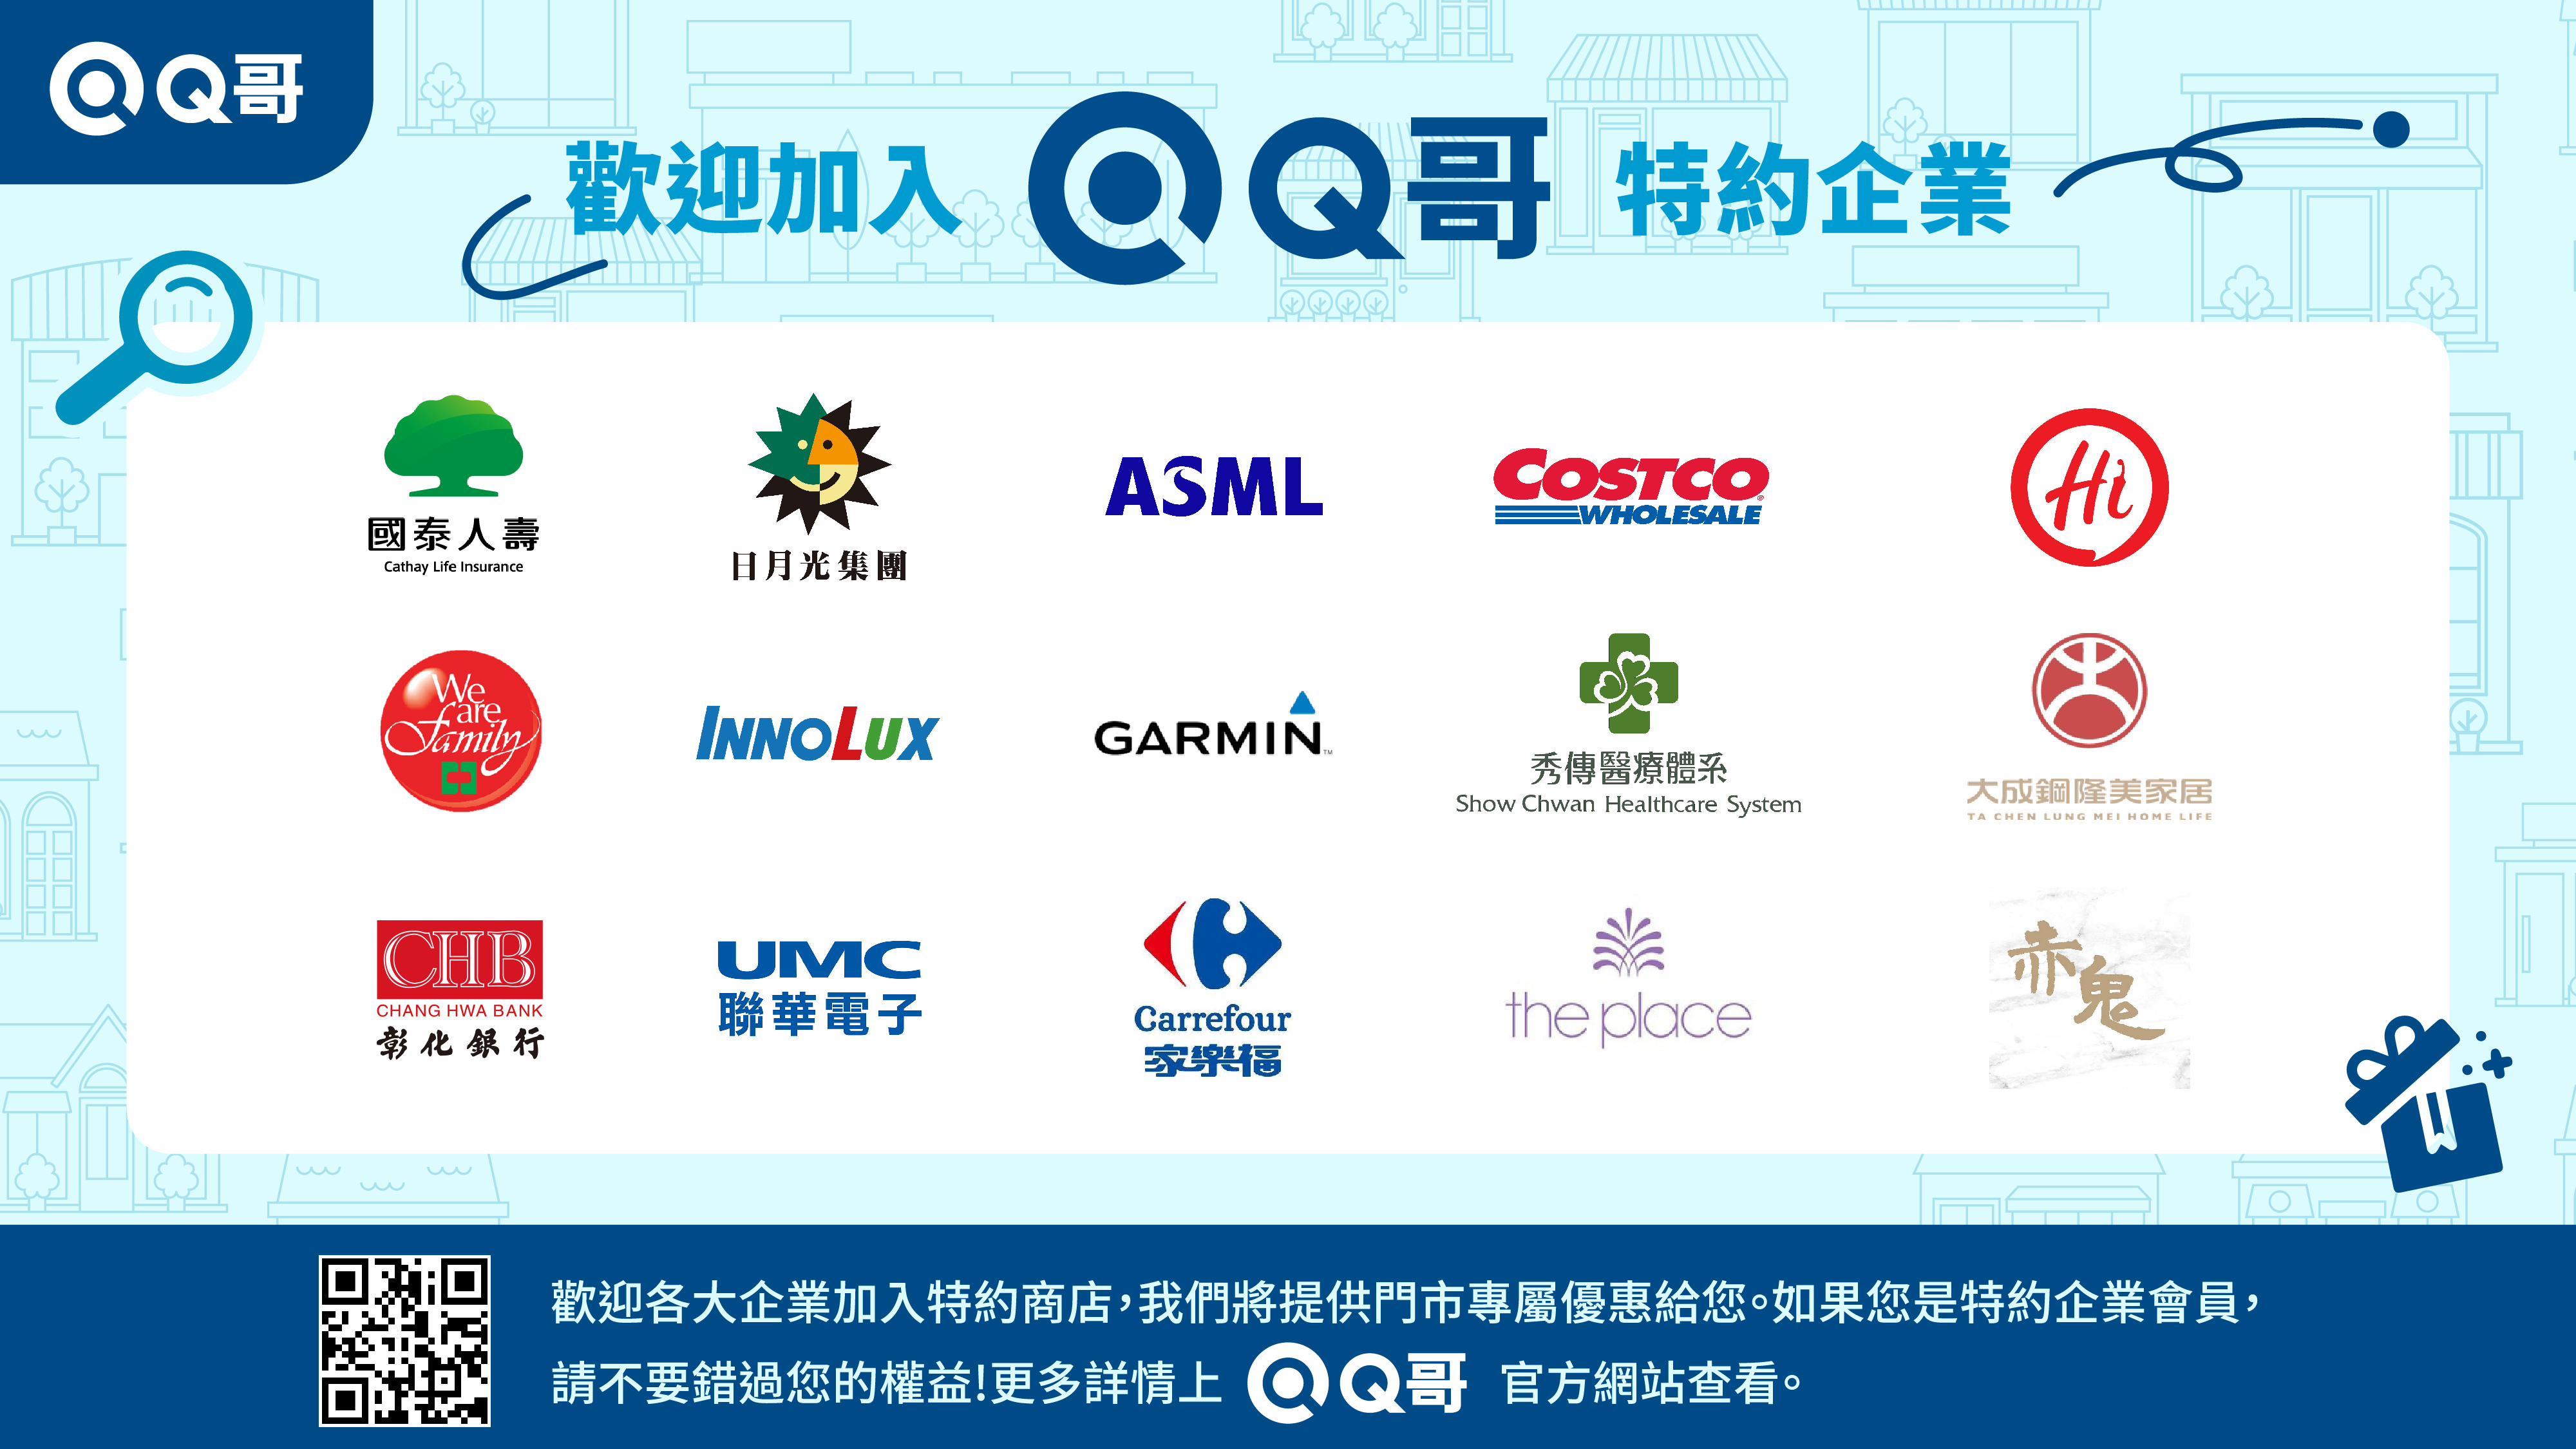 Q哥特約企業,合作企業,企業合作夥伴